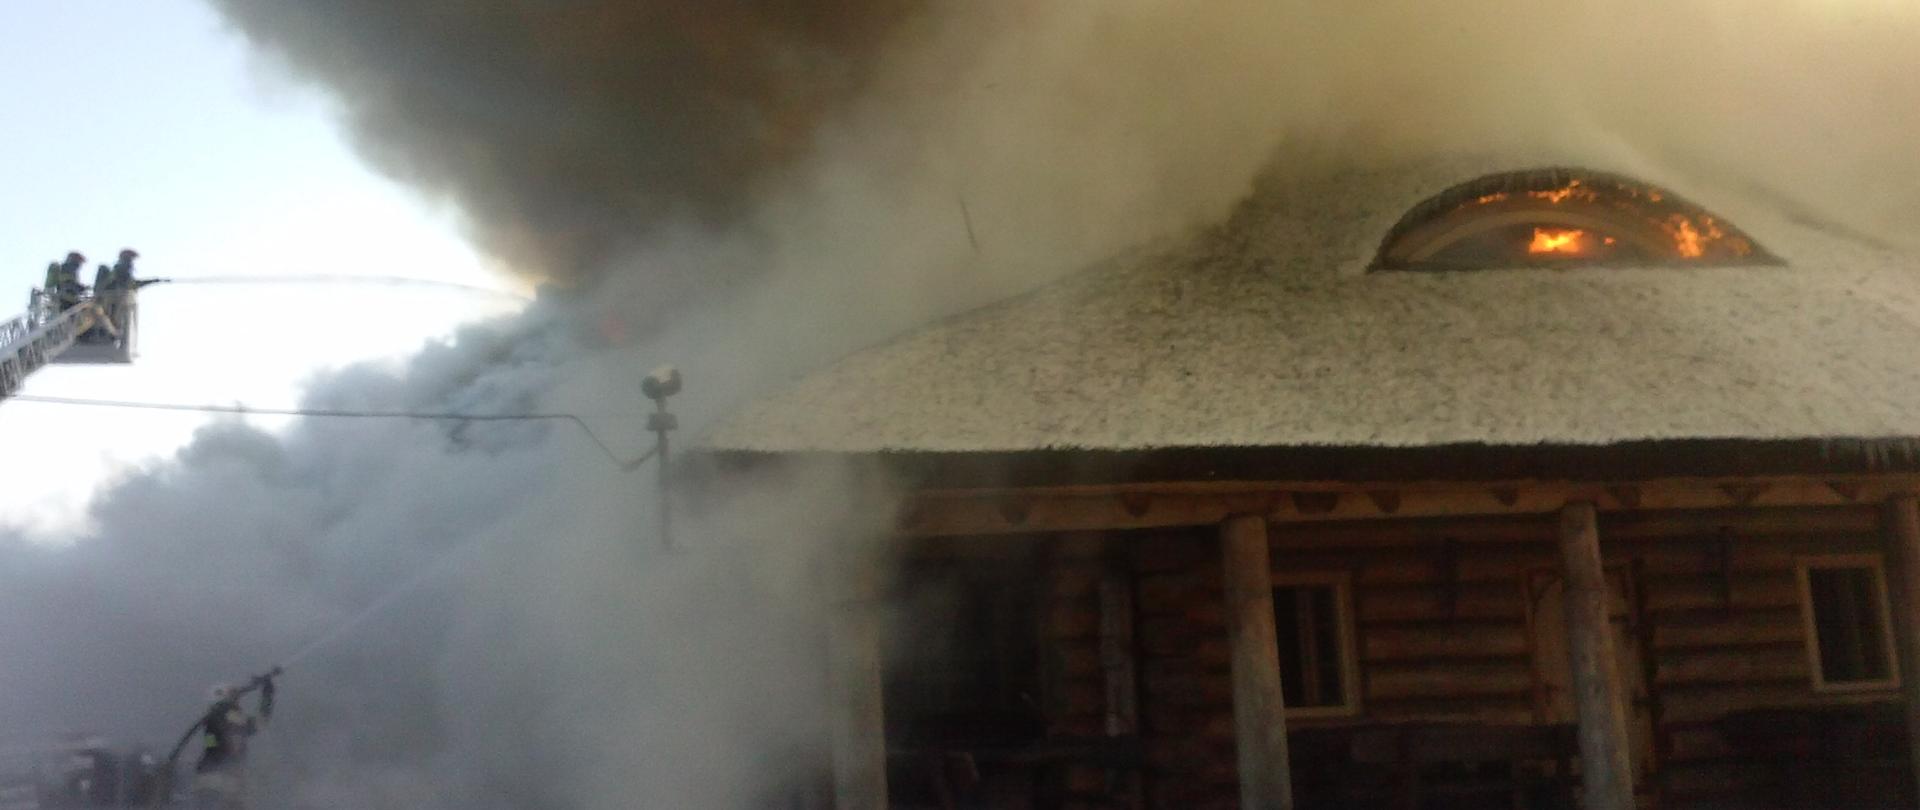 Pożar budynku o konstrukcji drewnianej, dach pokryty strzechą. Nad budynkiem unosi się kolumna szarego dymu. W oknie dachowym widać ogień. Z lewej strony dwóch strażaków, znajdujących się w koszu podnośnika mechanicznego podaje jedne prąd wody na źródło ognia.